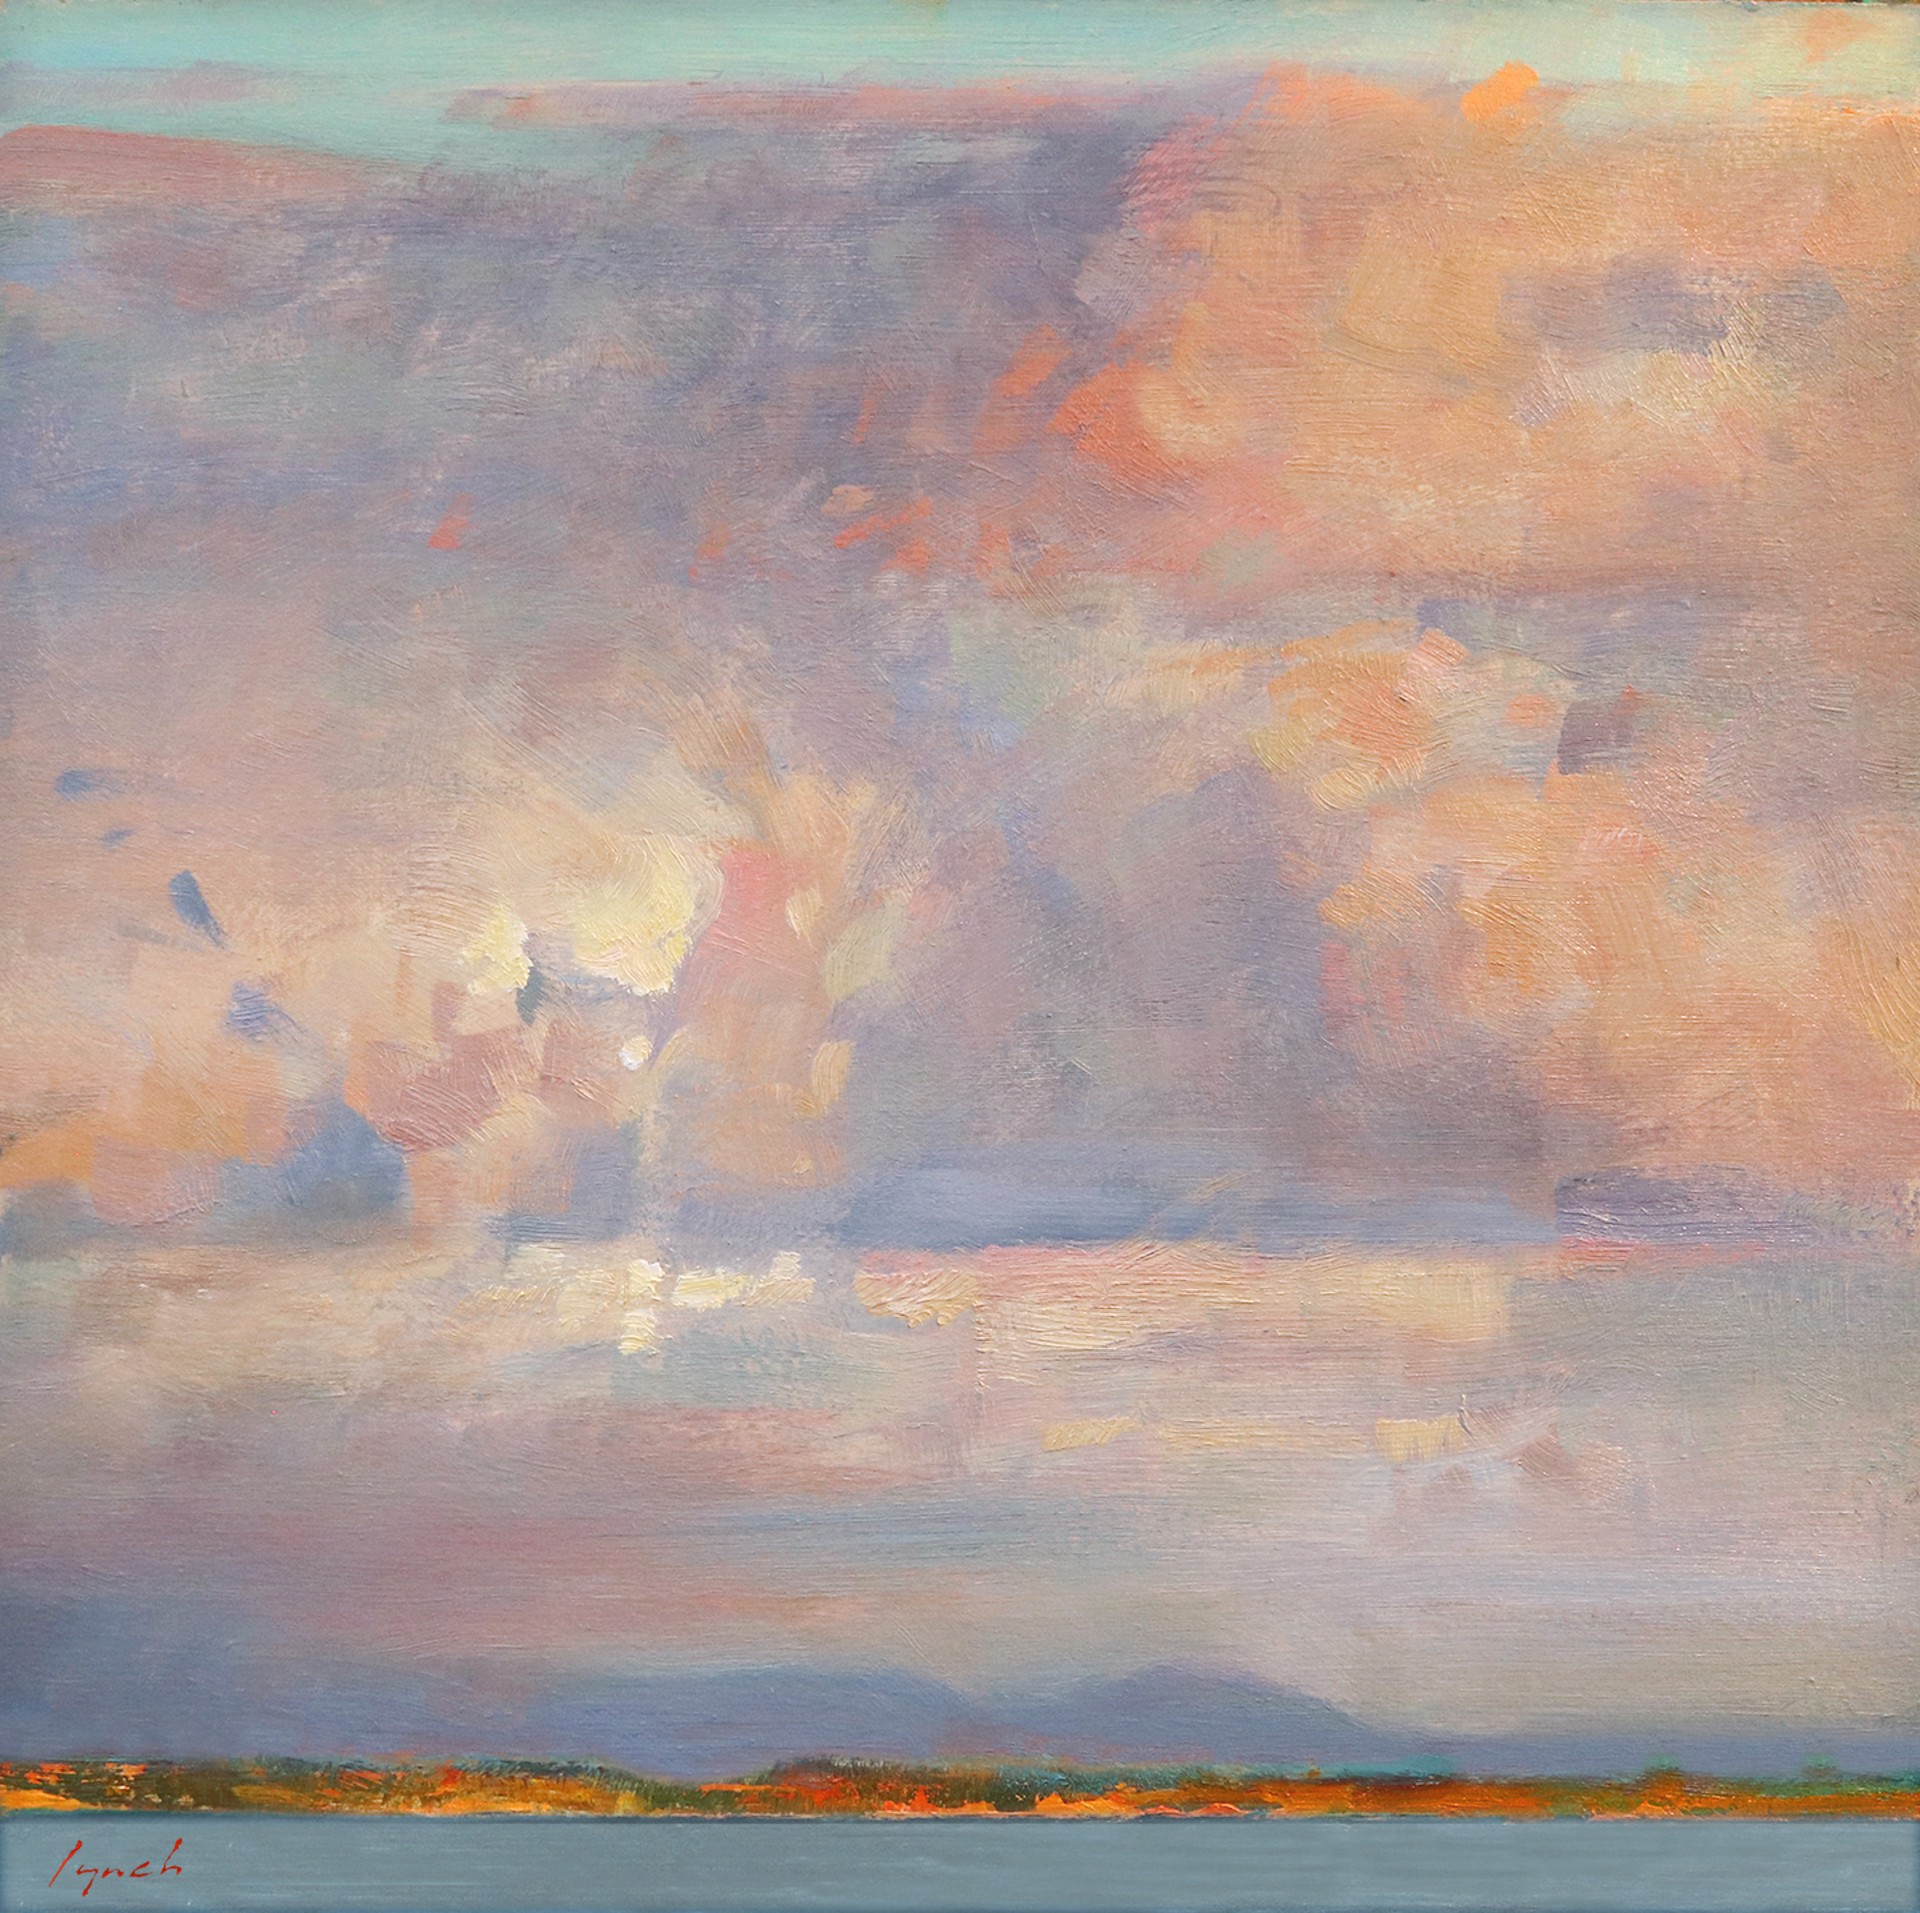 Big Sky Over Islands, Ballenas (Plein Air Study) by BRENT LYNCH